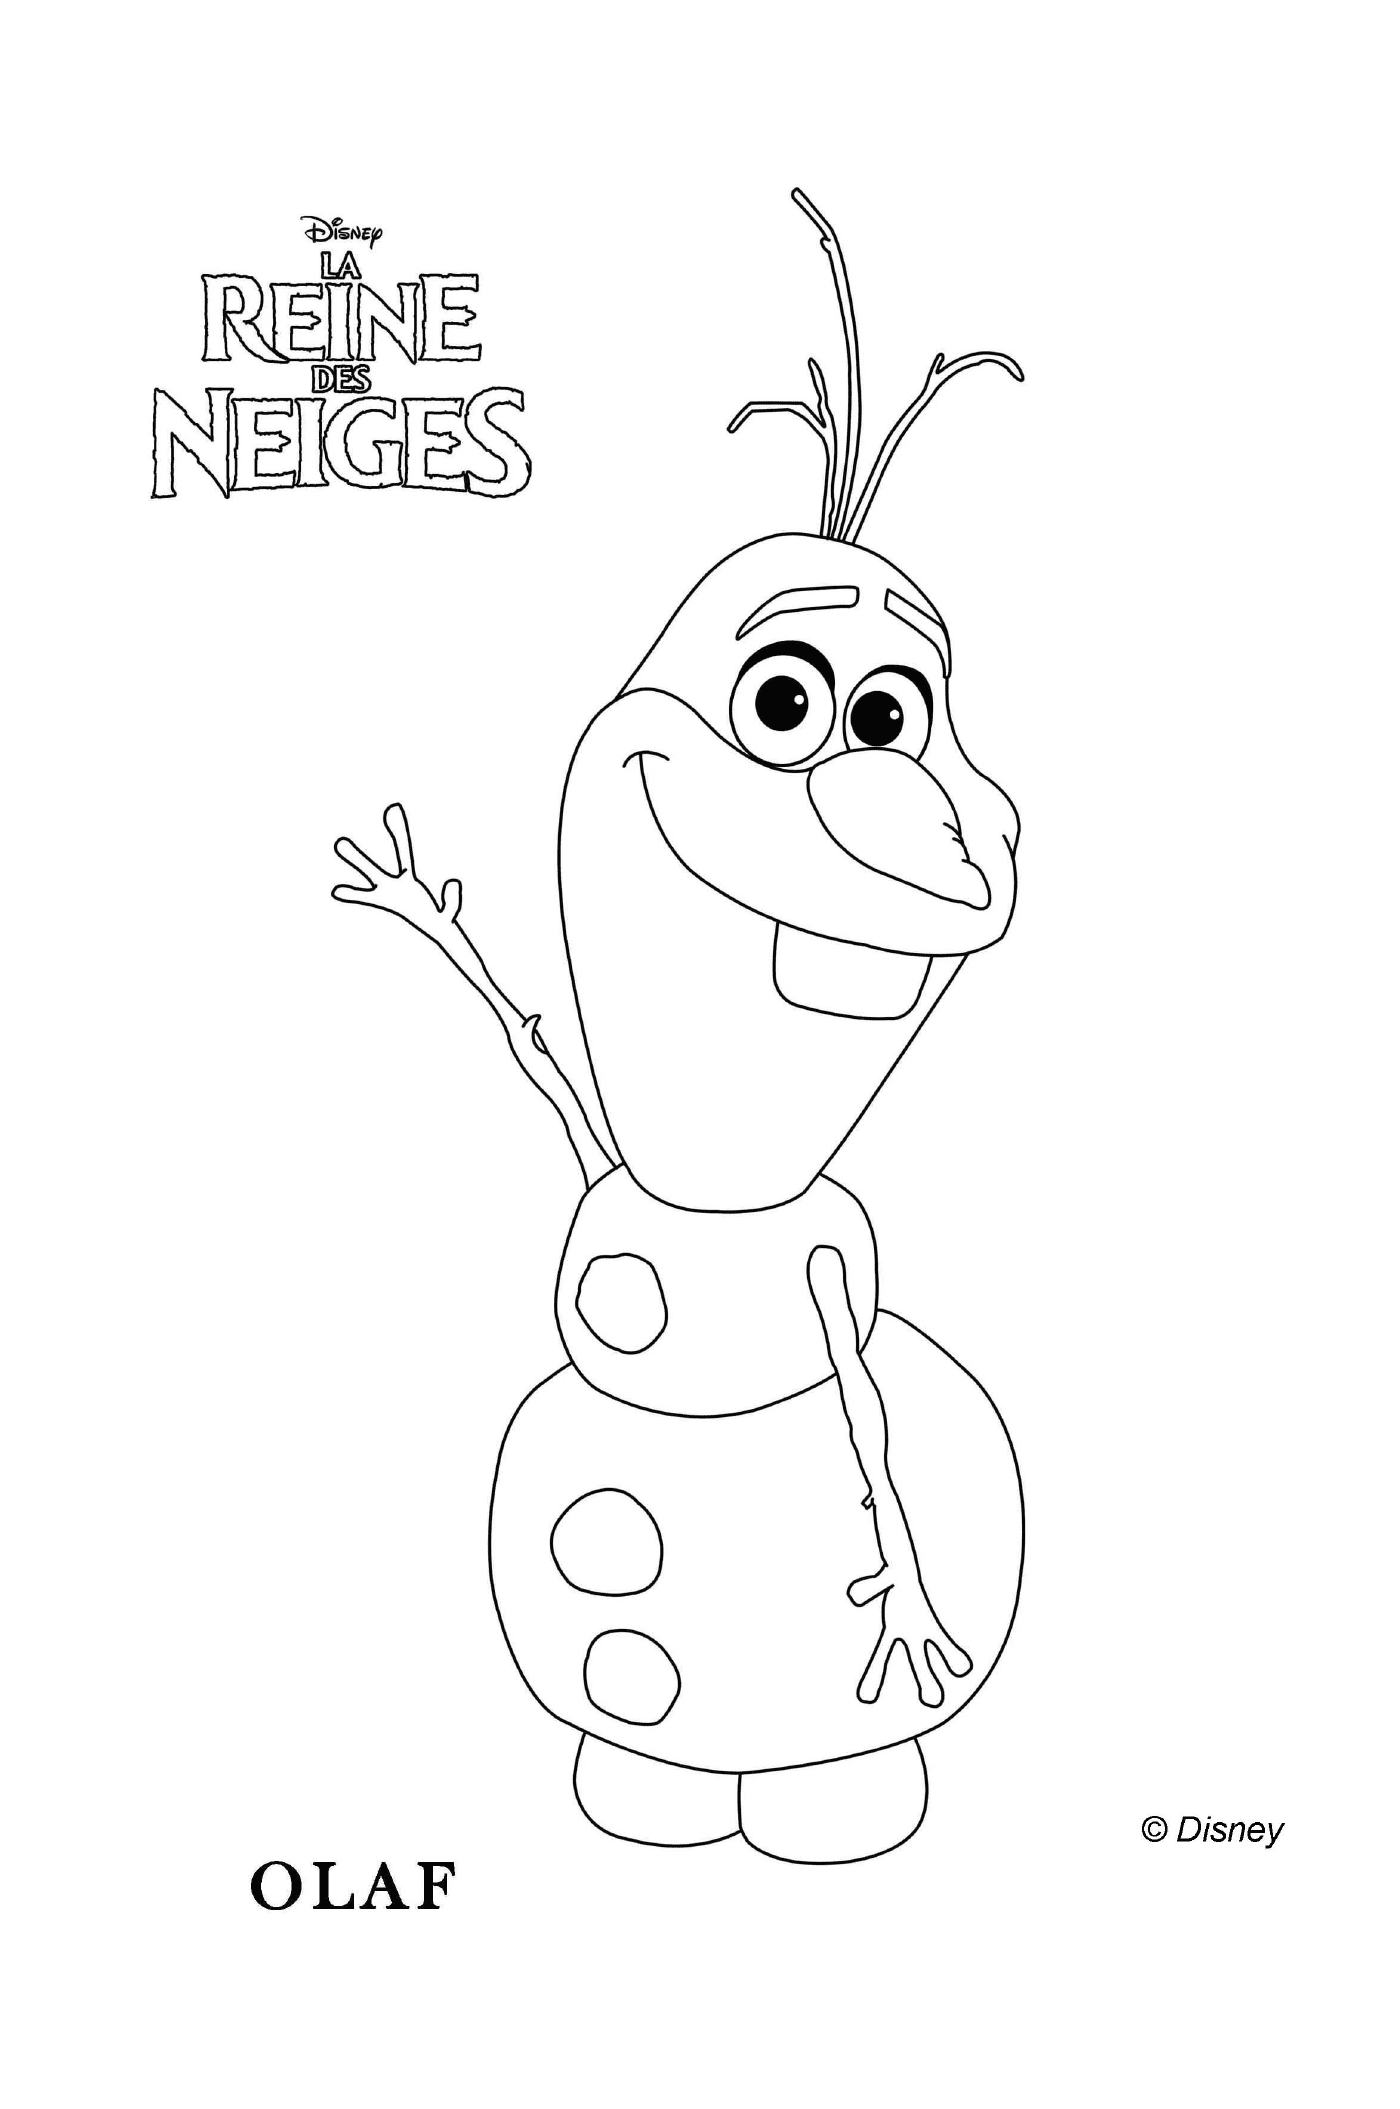  Olaf de Frozen saluda 